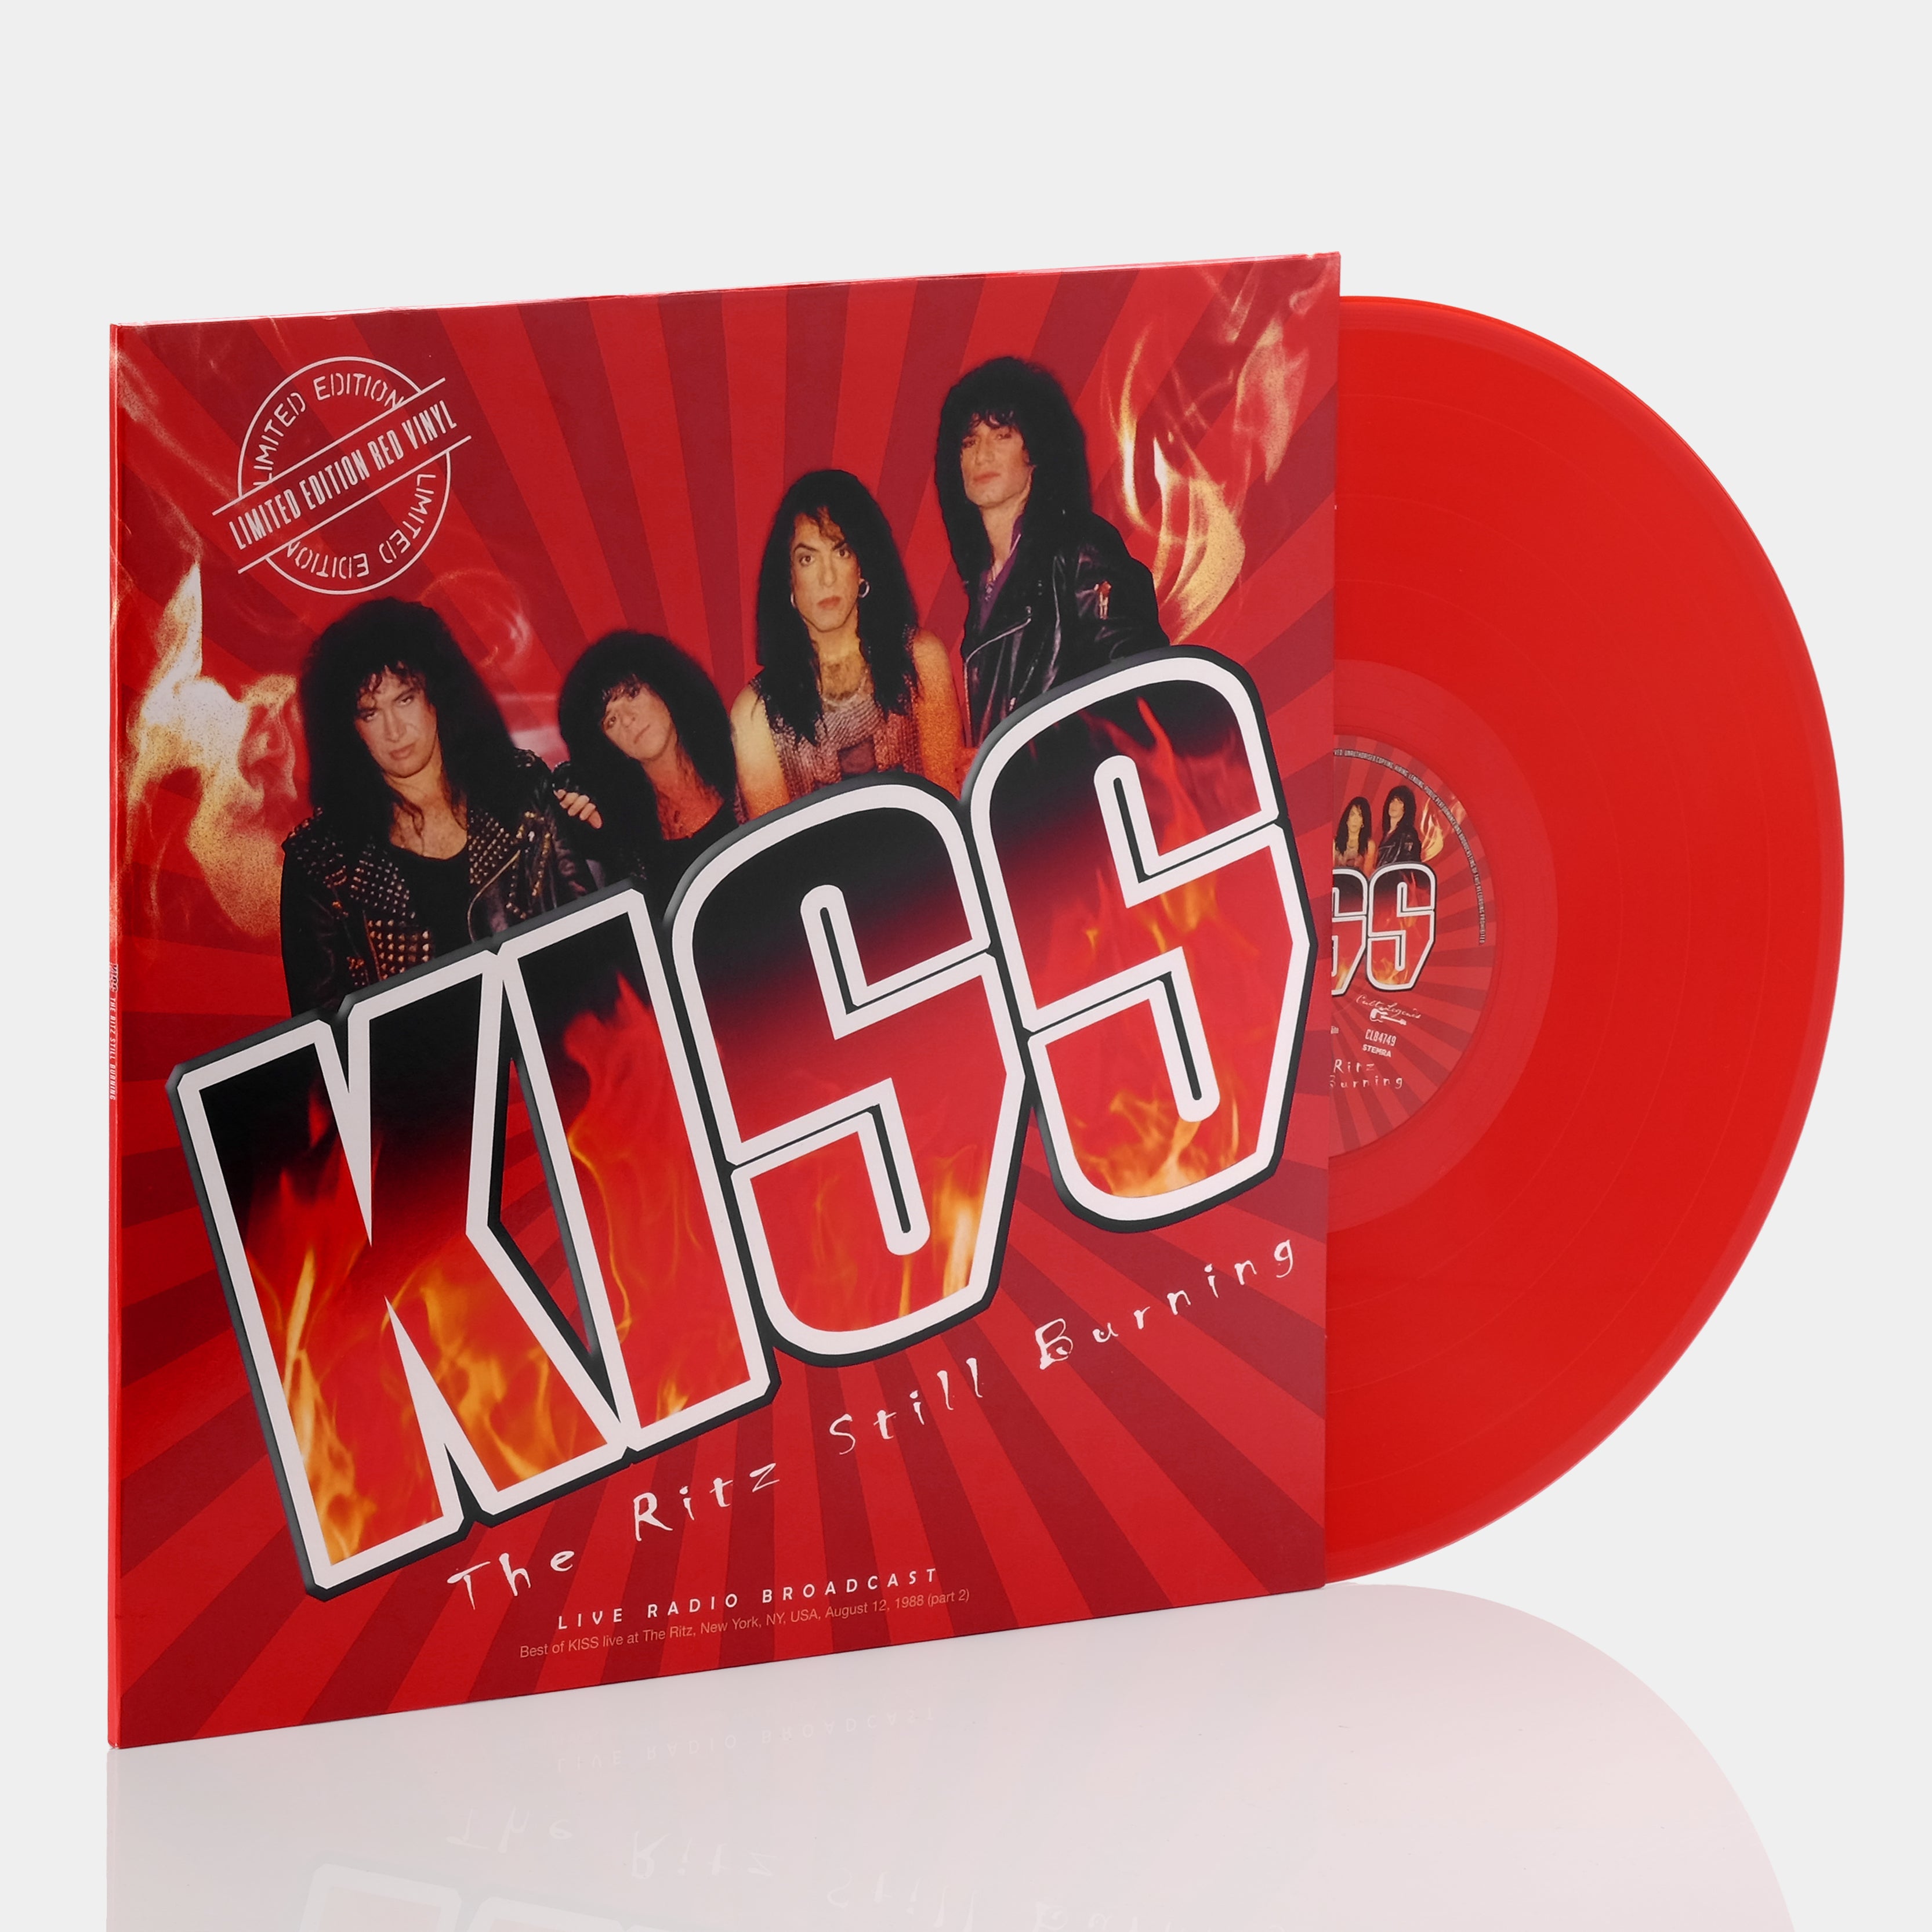 KISS - The Ritz Still Burning LP Red Vinyl Record